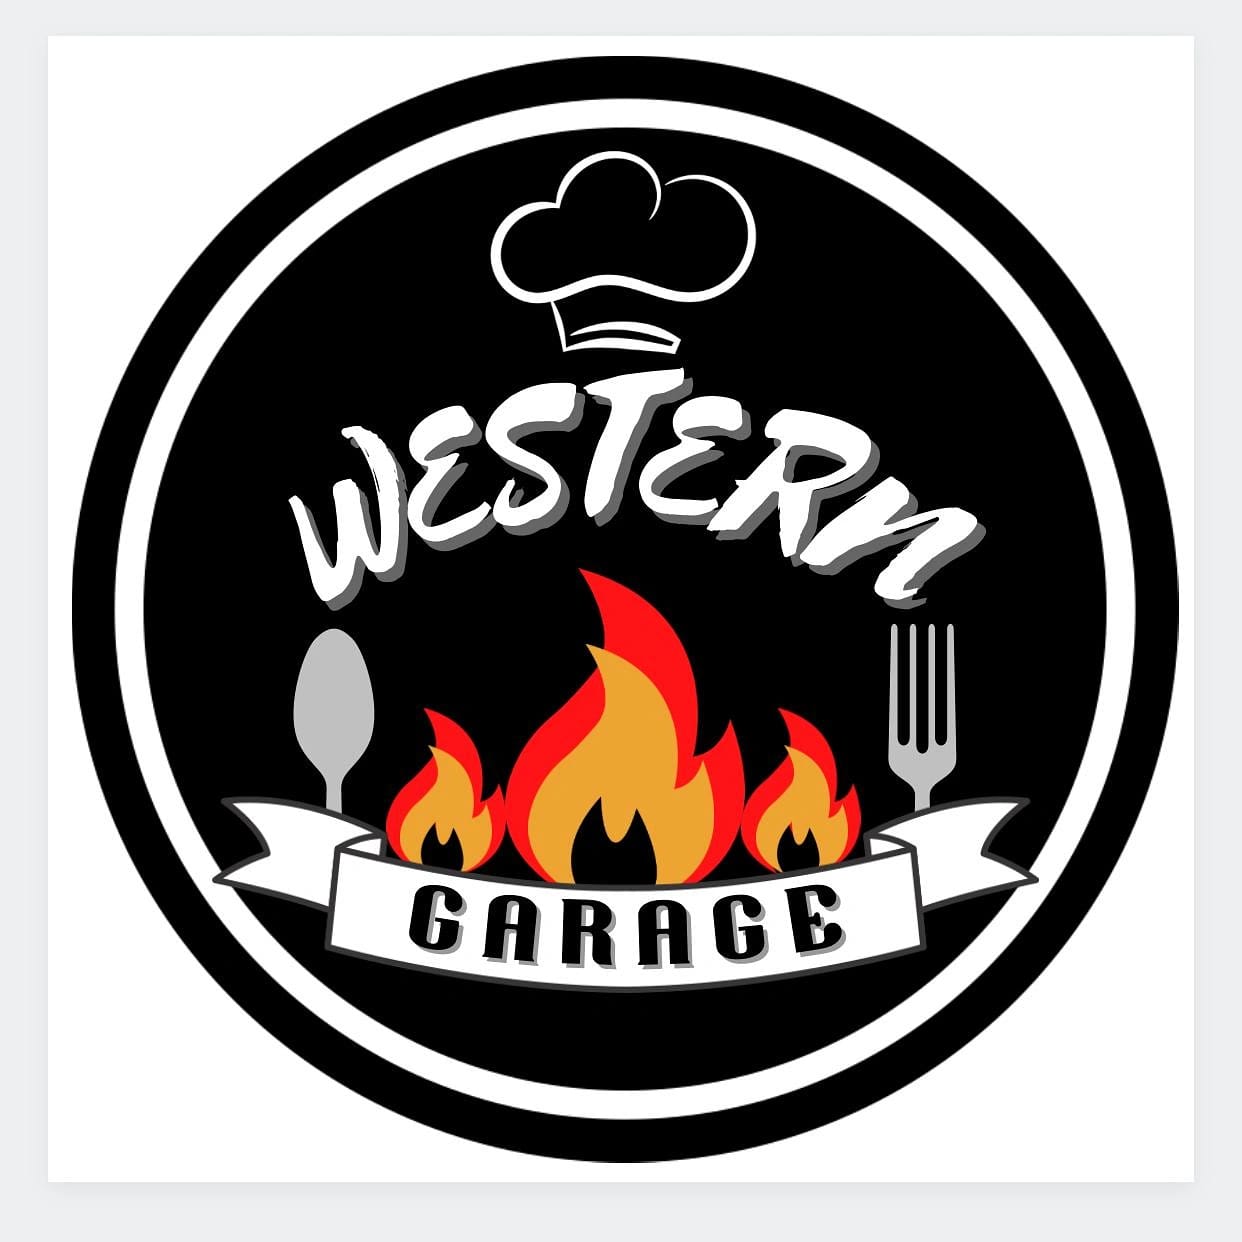 Western Garage Pte. Ltd. logo